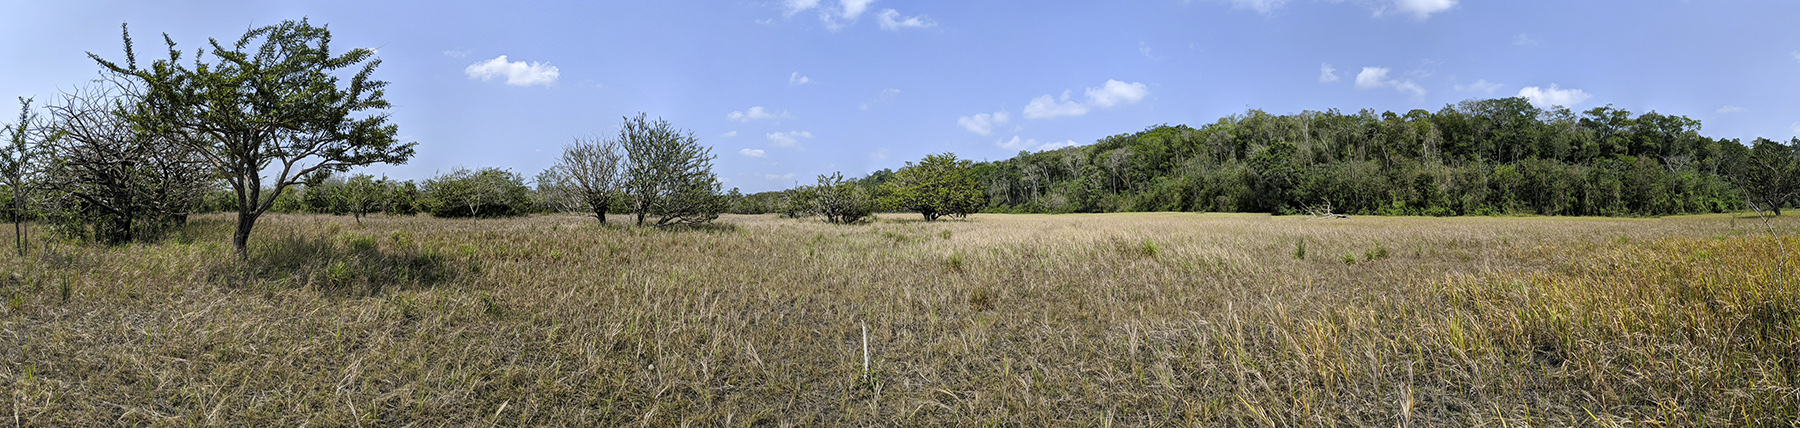 akum-savanna-east-side-panorama